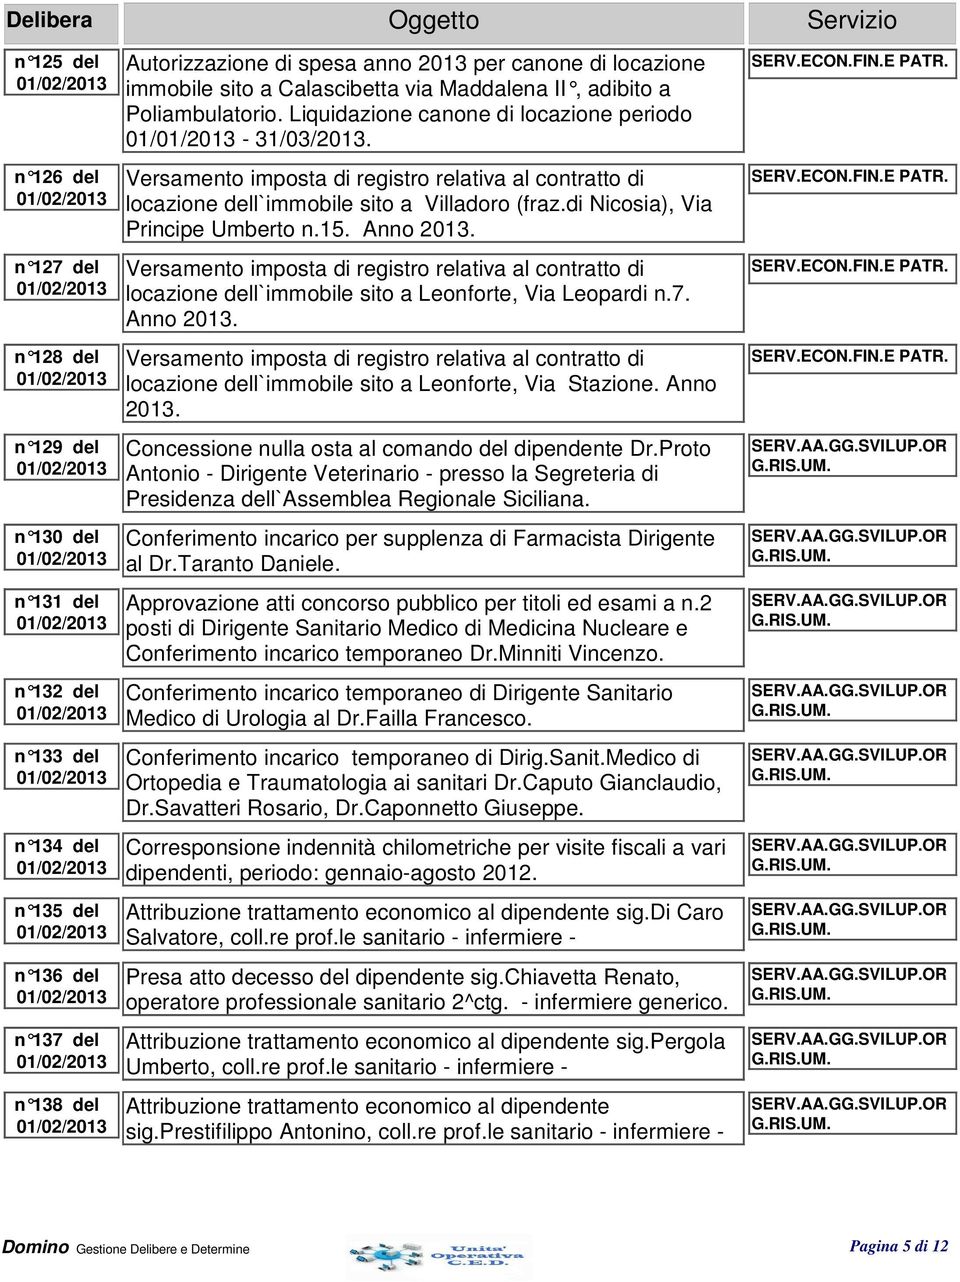 Versamento imposta di registro relativa al contratto di locazione dell`immobile sito a Villadoro (fraz.di Nicosia), Via Principe Umberto n.15. Anno 2013.